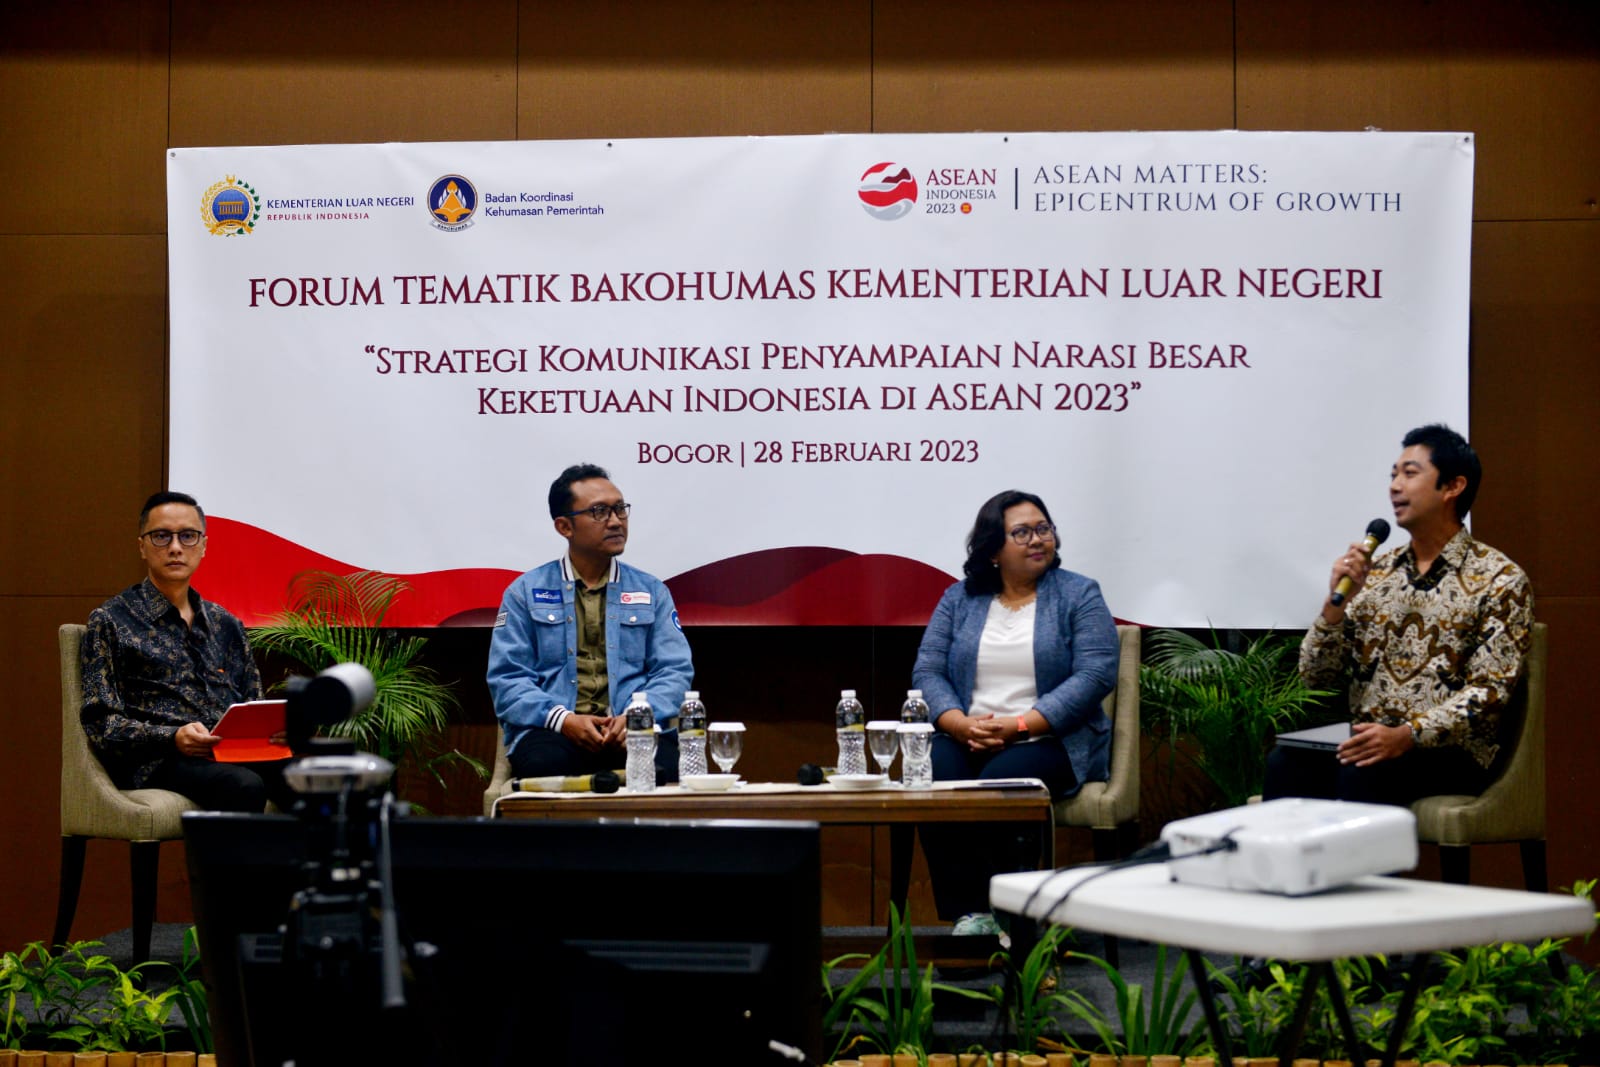 Strategi Komunikasi Keketuaan Indonesia di ASEAN 2023